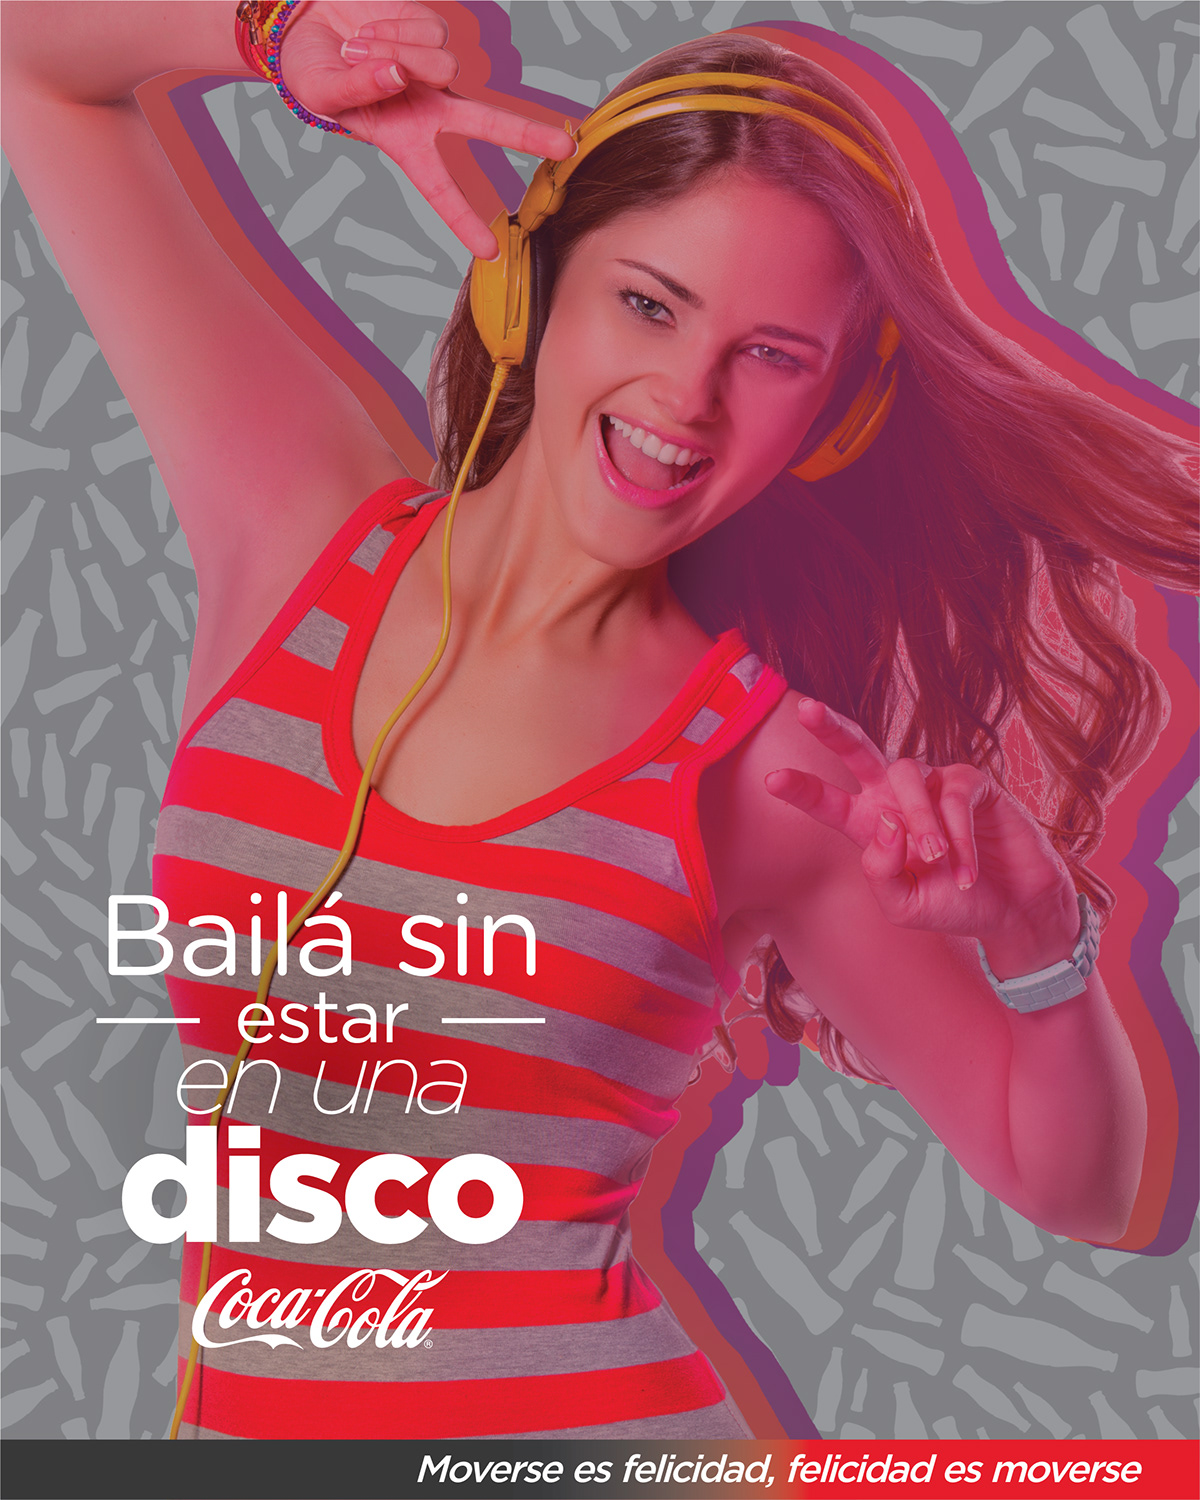 Coca-Cola coca-cola company felicidad es moverse moverse es felicidad